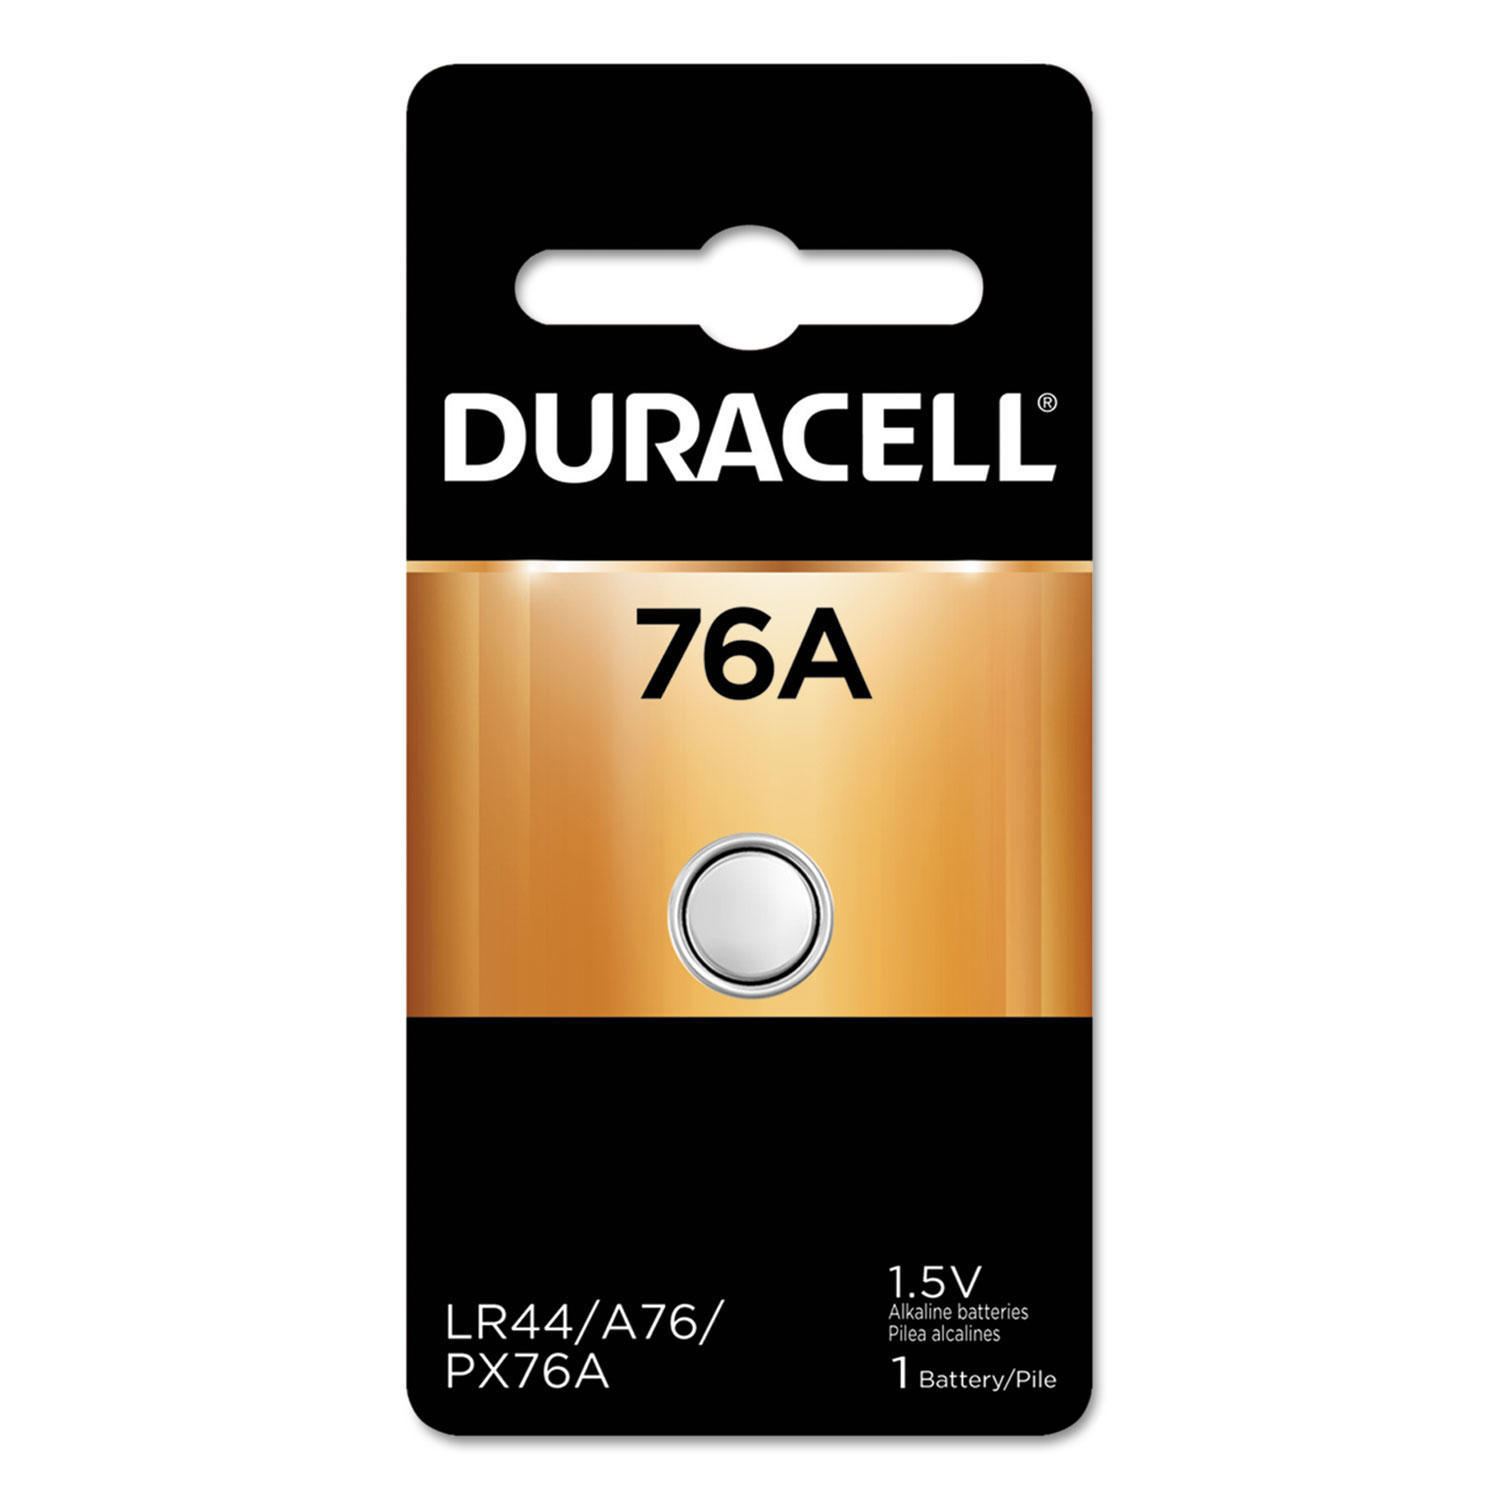  Duracell PA76A/675BPK Specialty Alkaline Battery, 76/675, 1.5V (DURPX76A675PK09) 